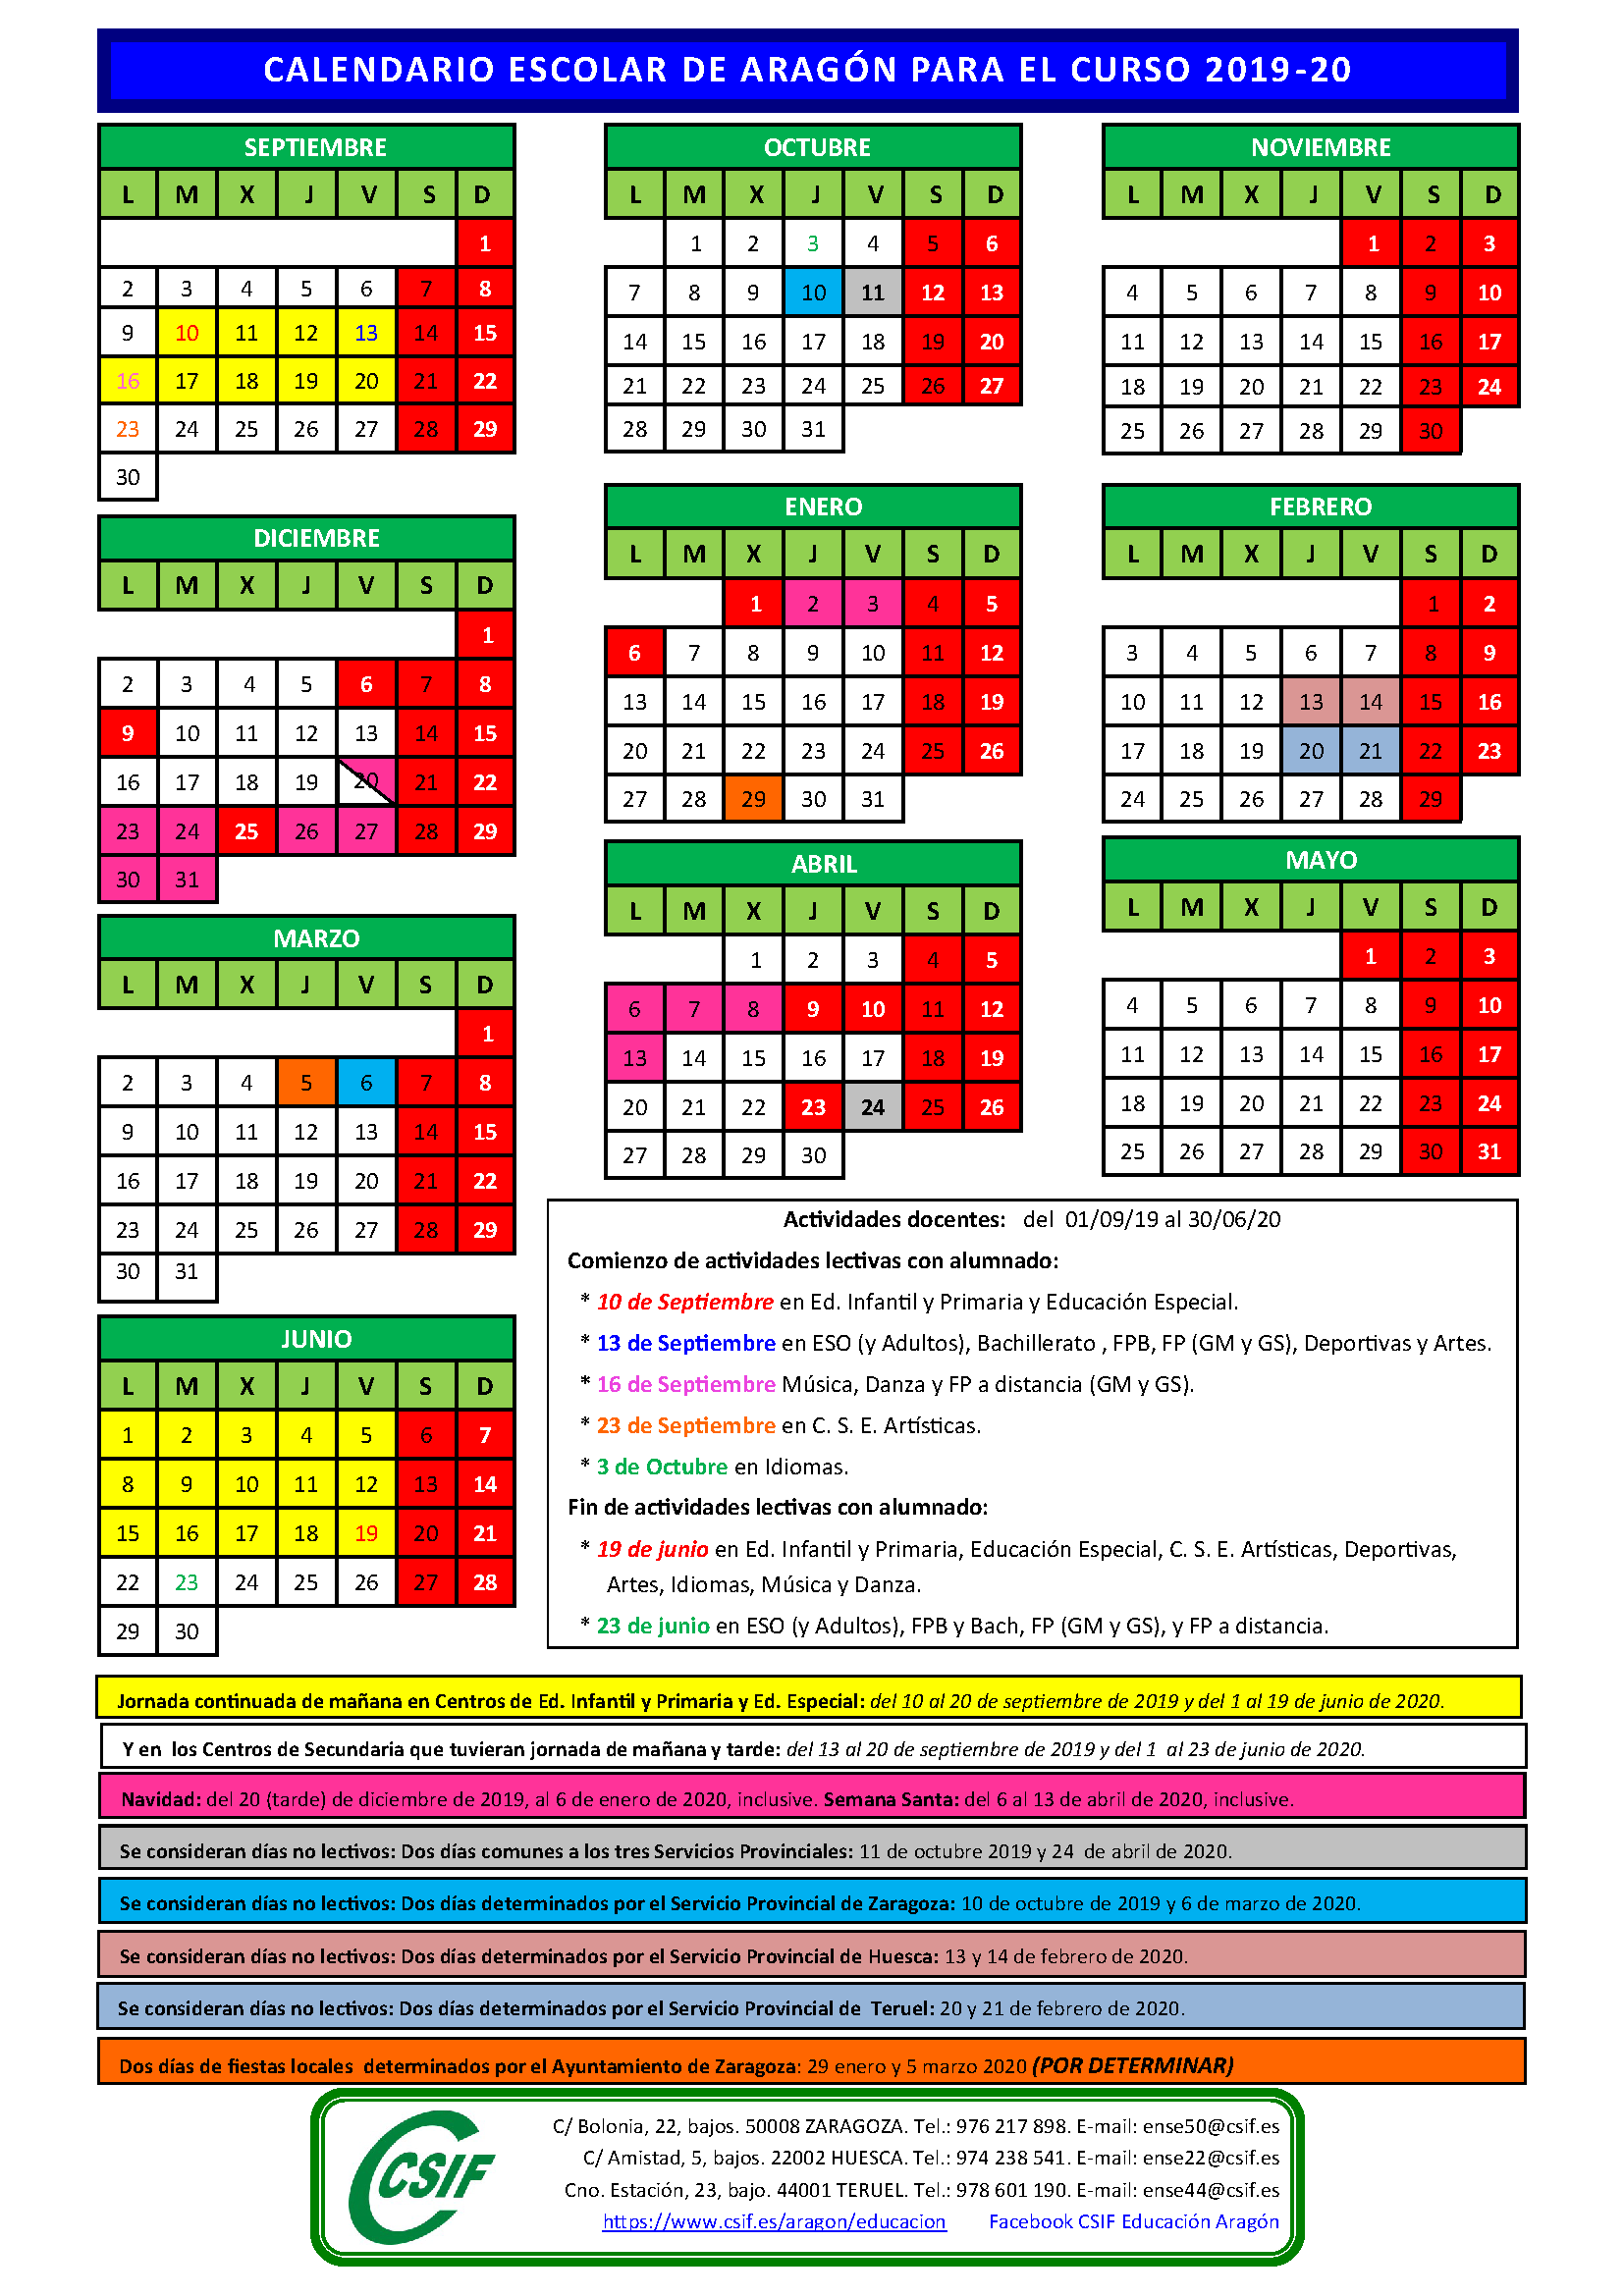 calendario escolar aragon 2019